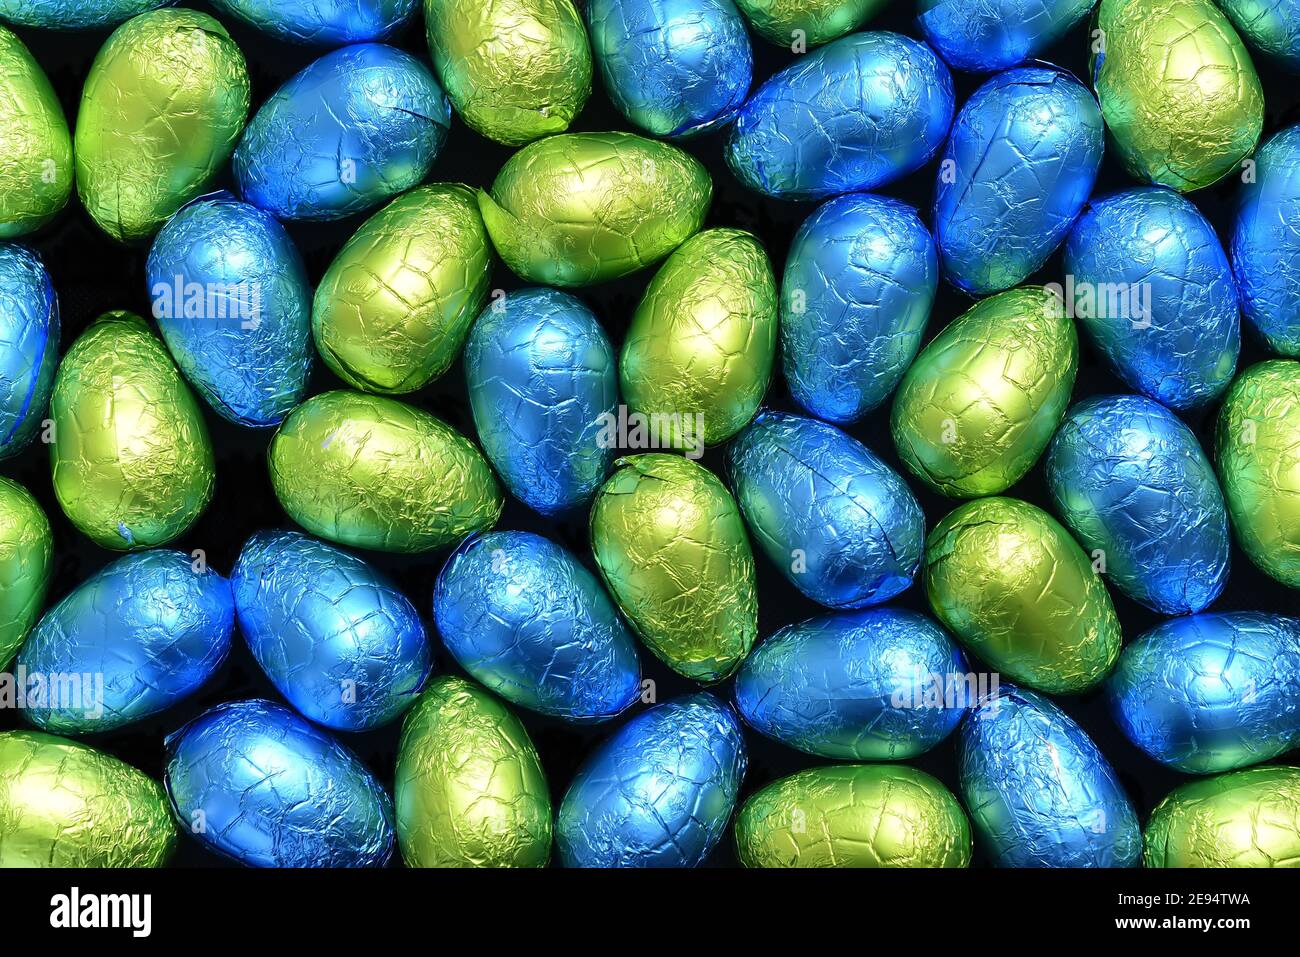 Stapel oder Gruppe von mehrfarbigen und verschiedenen Größen von bunten Folie verpackt Schokolade ostereier in blau, gelb und lindgrün. Stockfoto